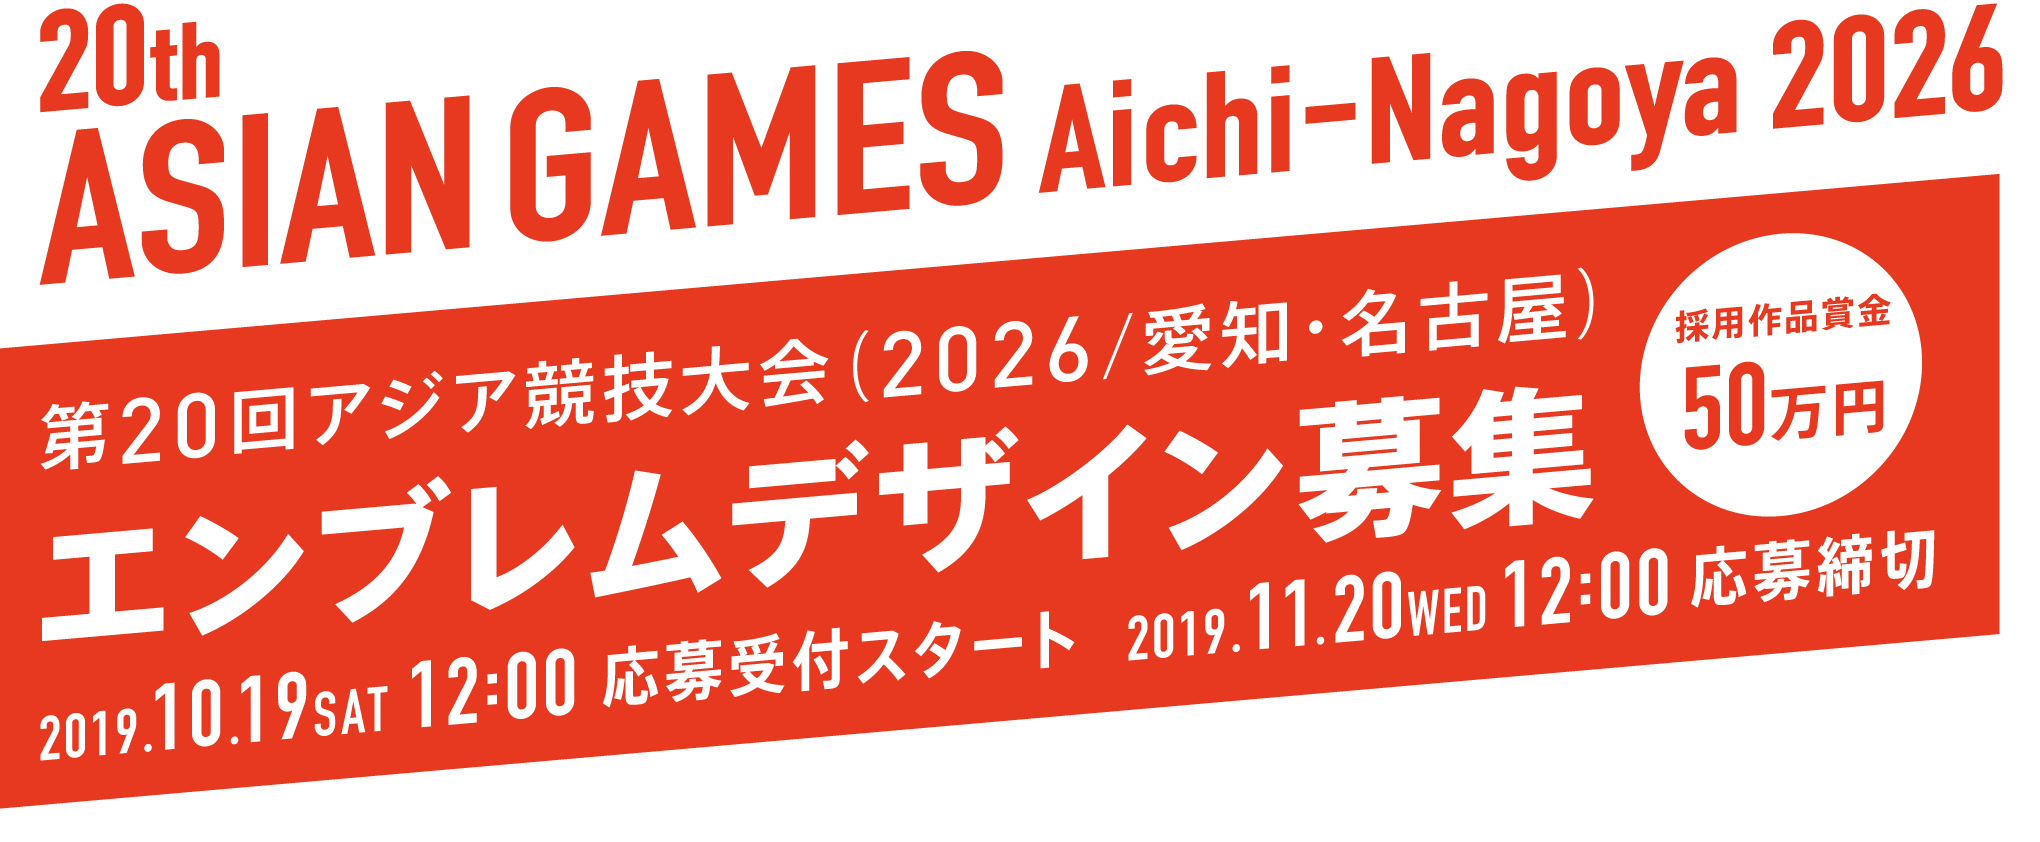 第20回アジア競技大会（2026/愛知・名古屋）エンブレムデザイン募集